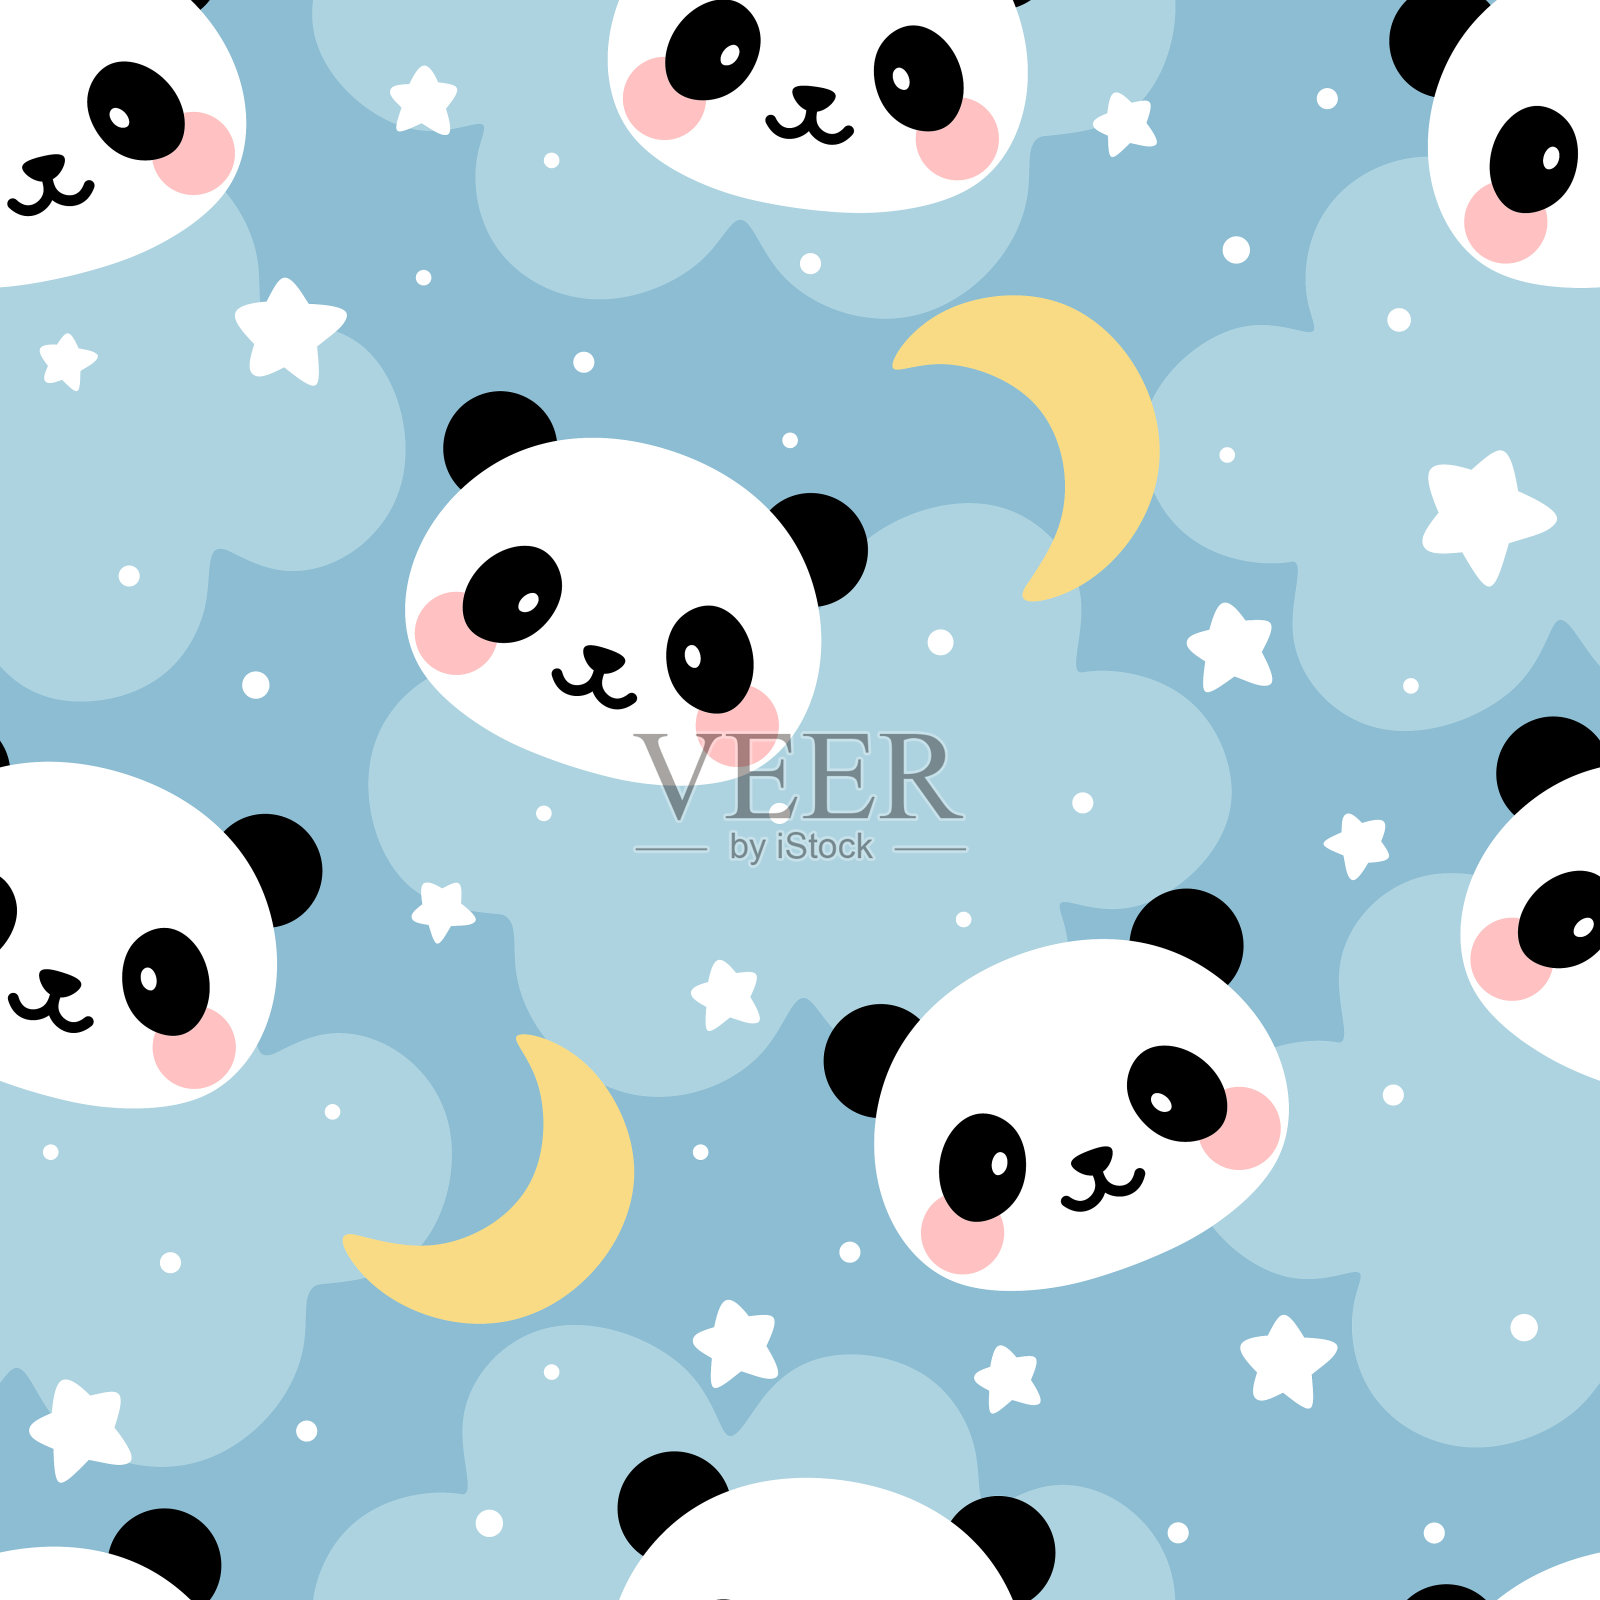 熊猫图案天衣无缝的背景下，可爱的熊猫快乐地在天空中点缀着月亮和星星插画图片素材